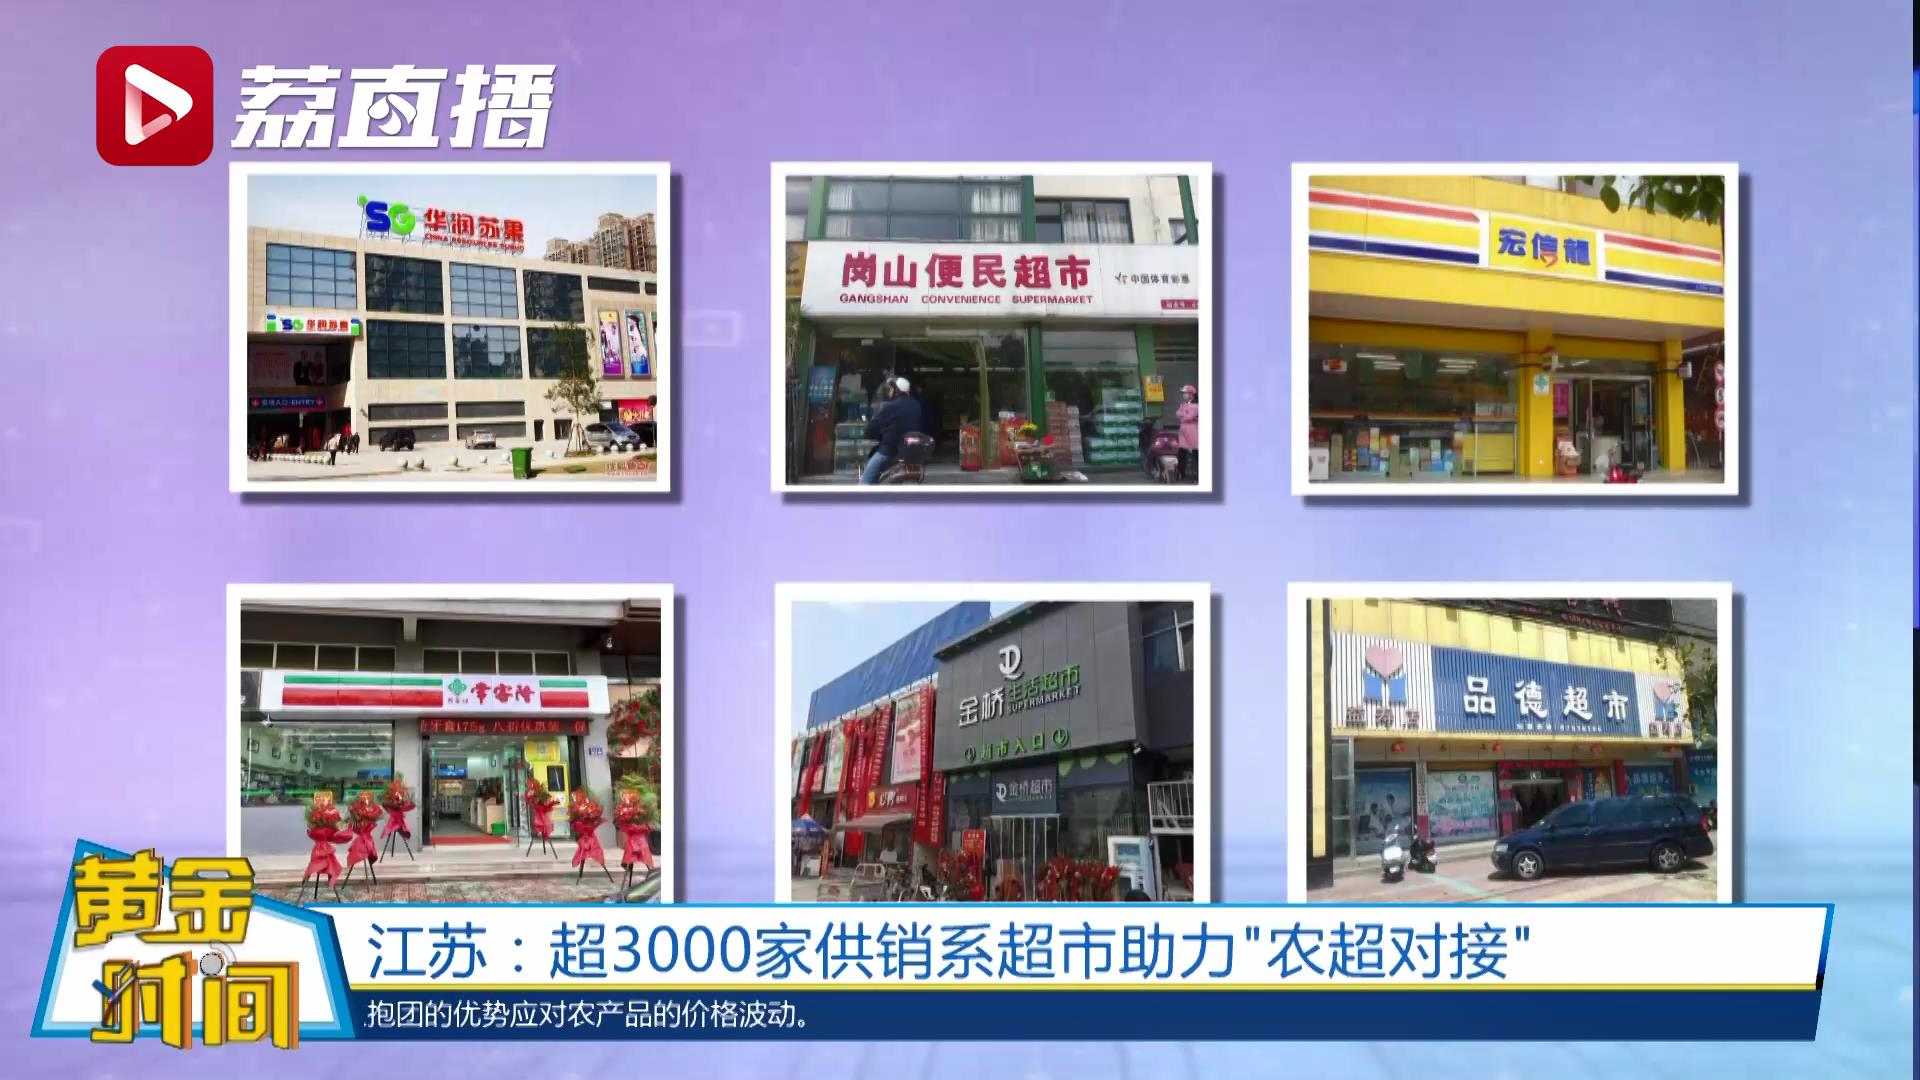 2 、江苏这些超市和菜场是供销社办的